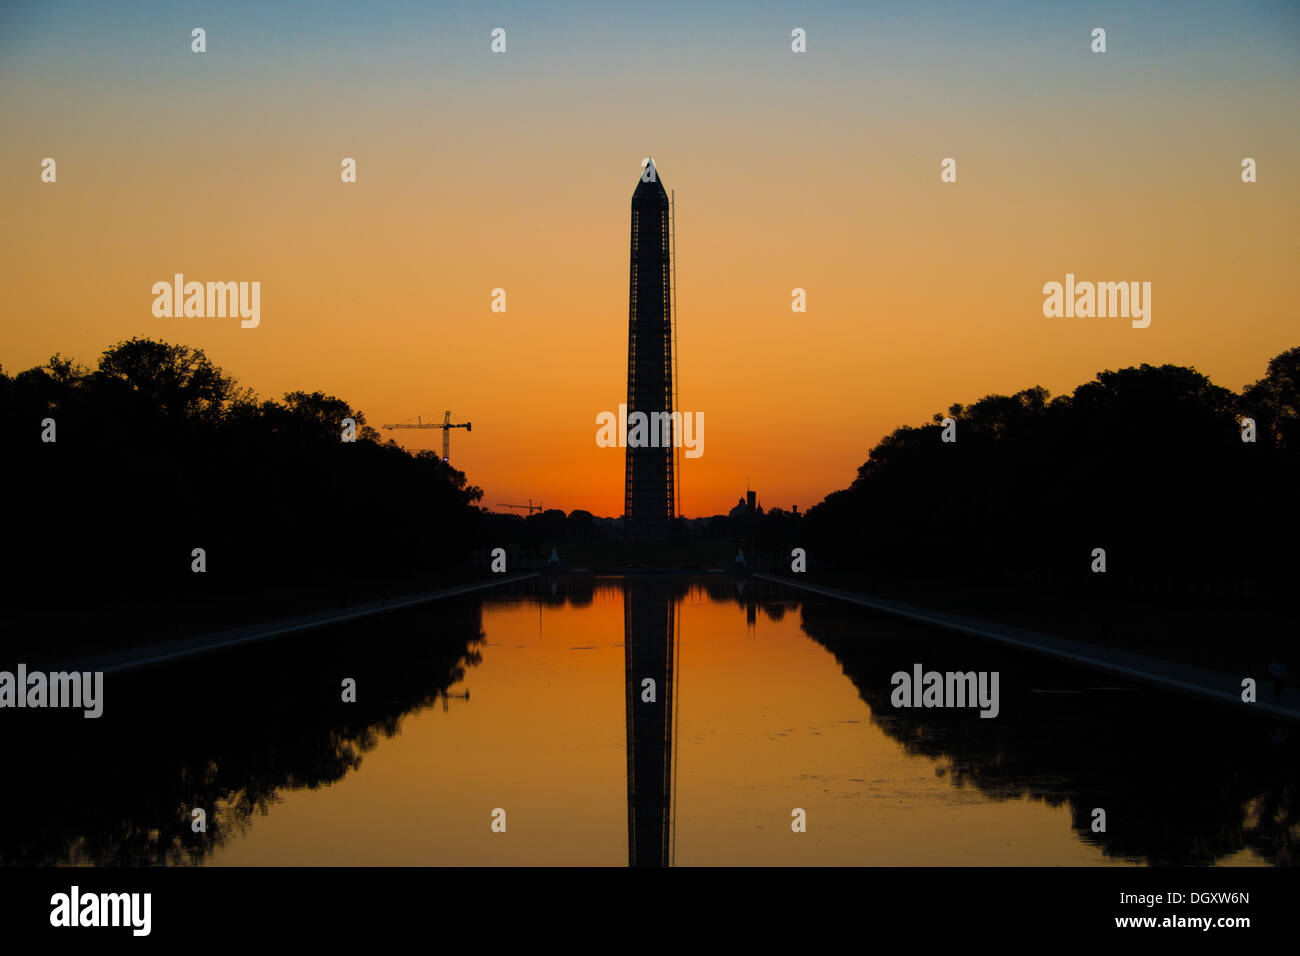 WASHINGTON DC, USA - Das orange leuchten in den Himmel kurz vor der Morgendämmerung hinter dem Washington Monument und einen reflektierenden Pool in Washington DC. Stockfoto